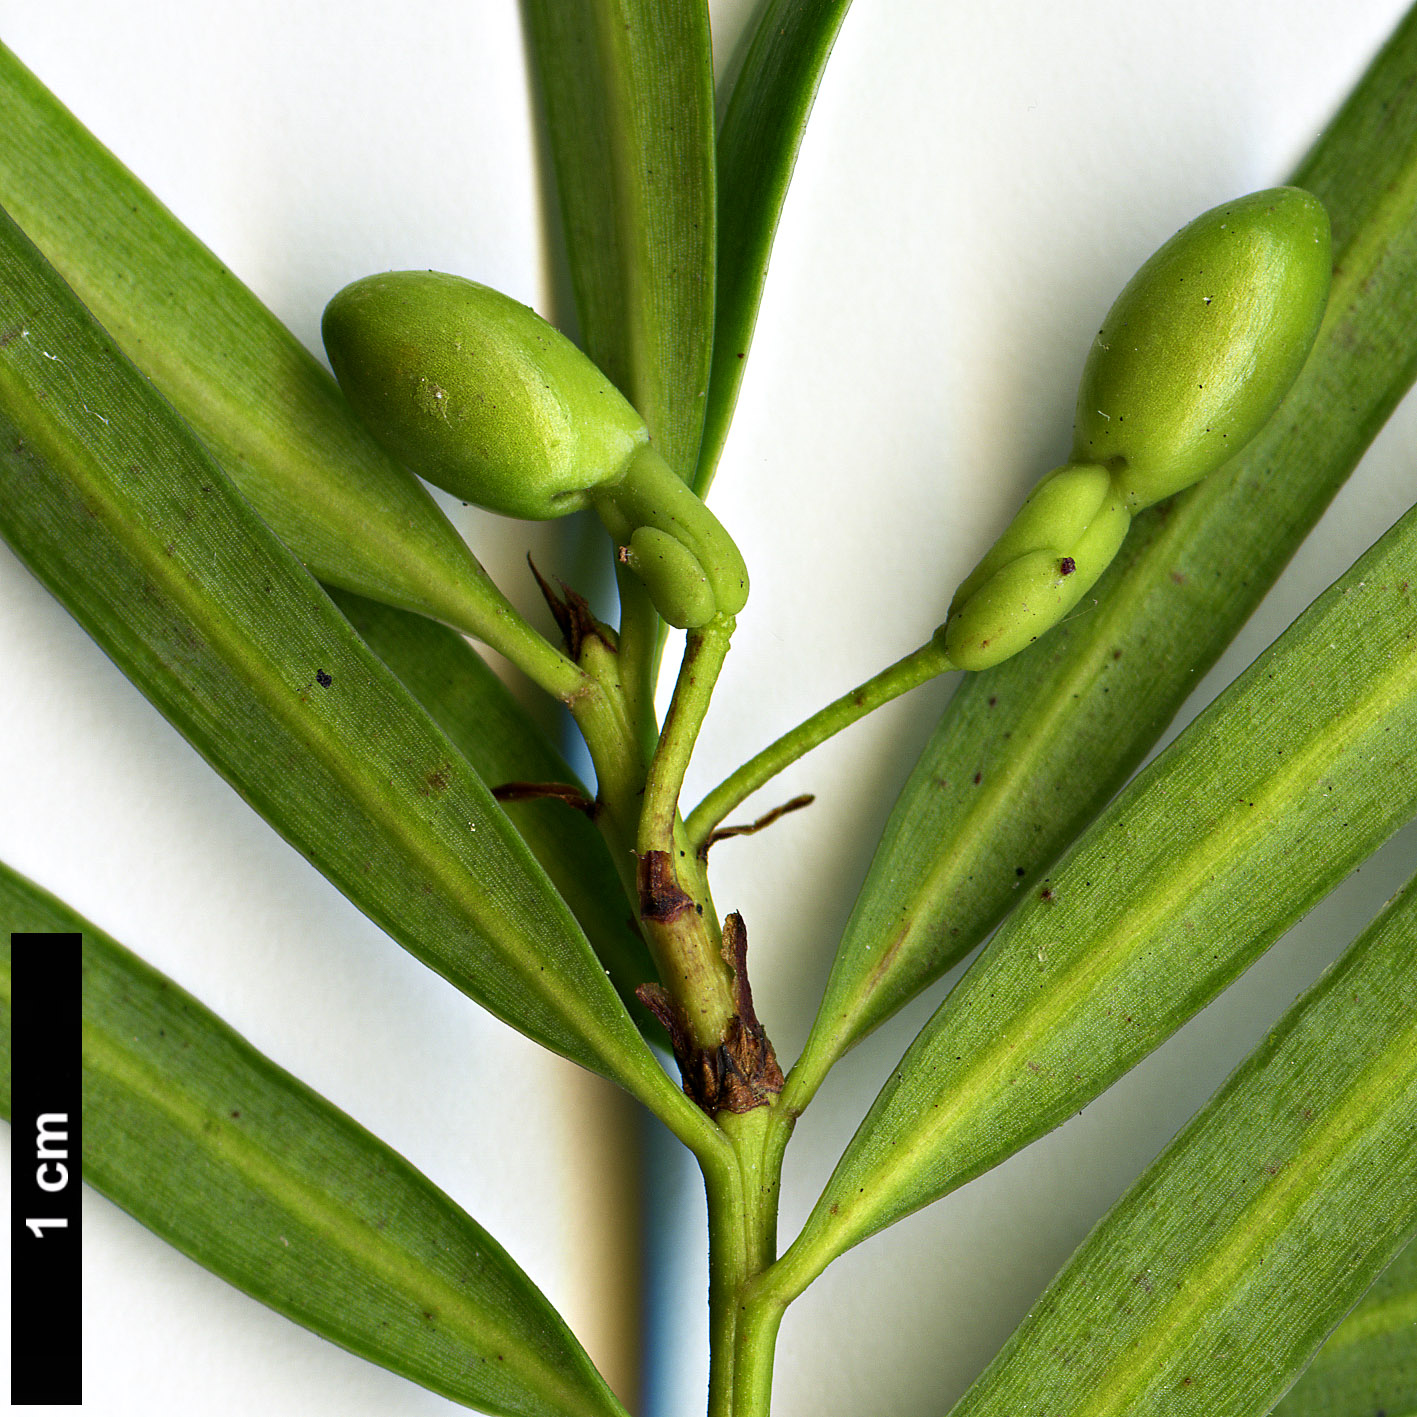 High resolution image: Family: Podocarpaceae - Genus: Podocarpus - Taxon: salignus